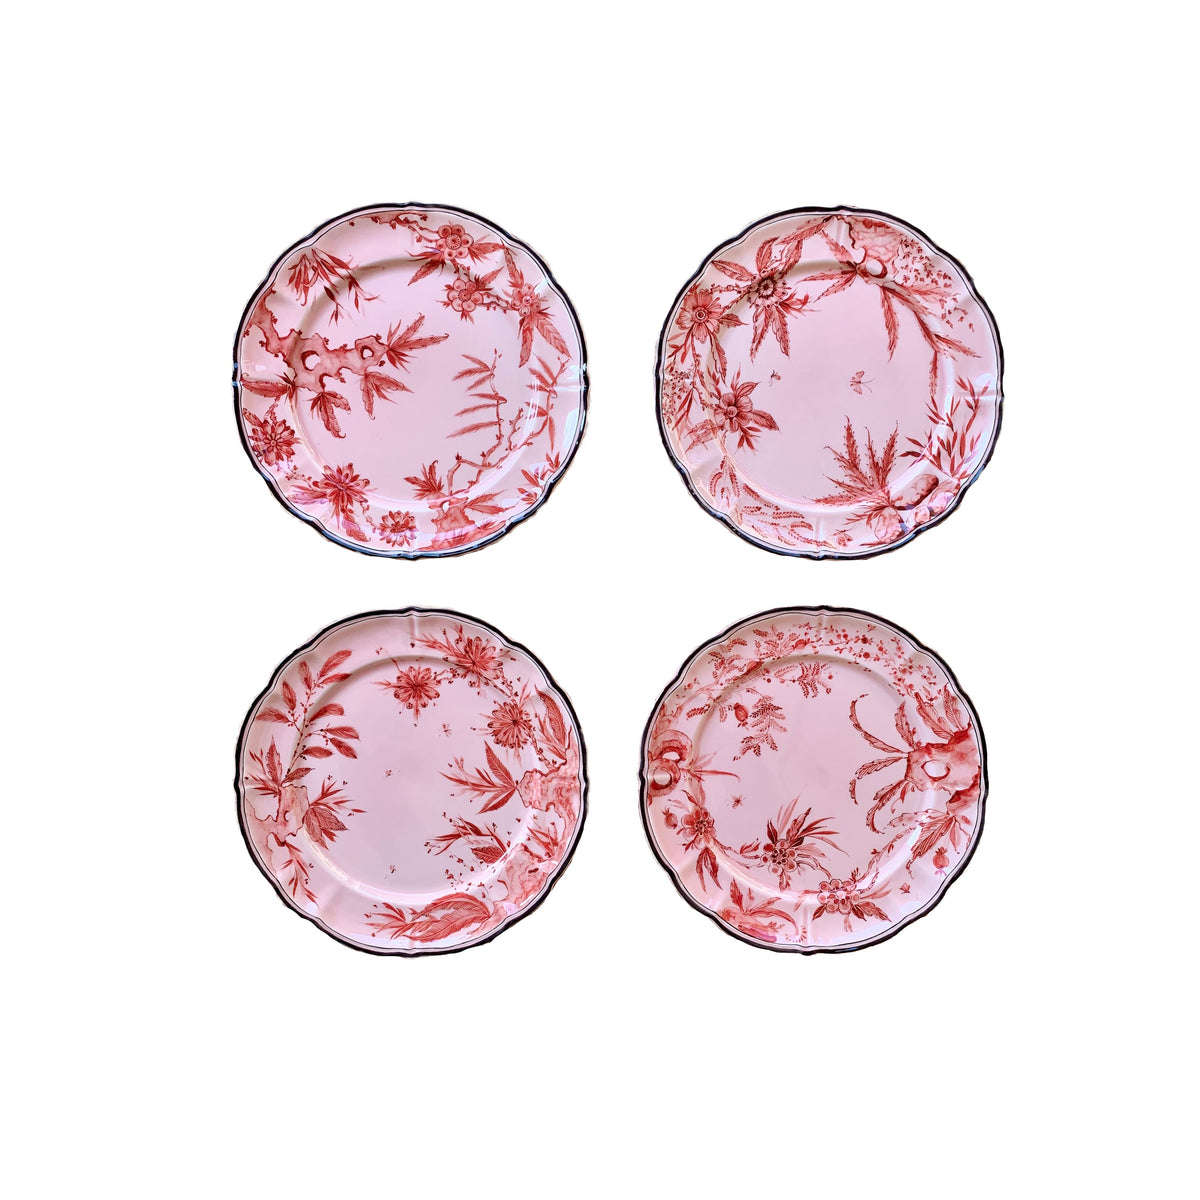 Rocaille Pink Dessert Plate